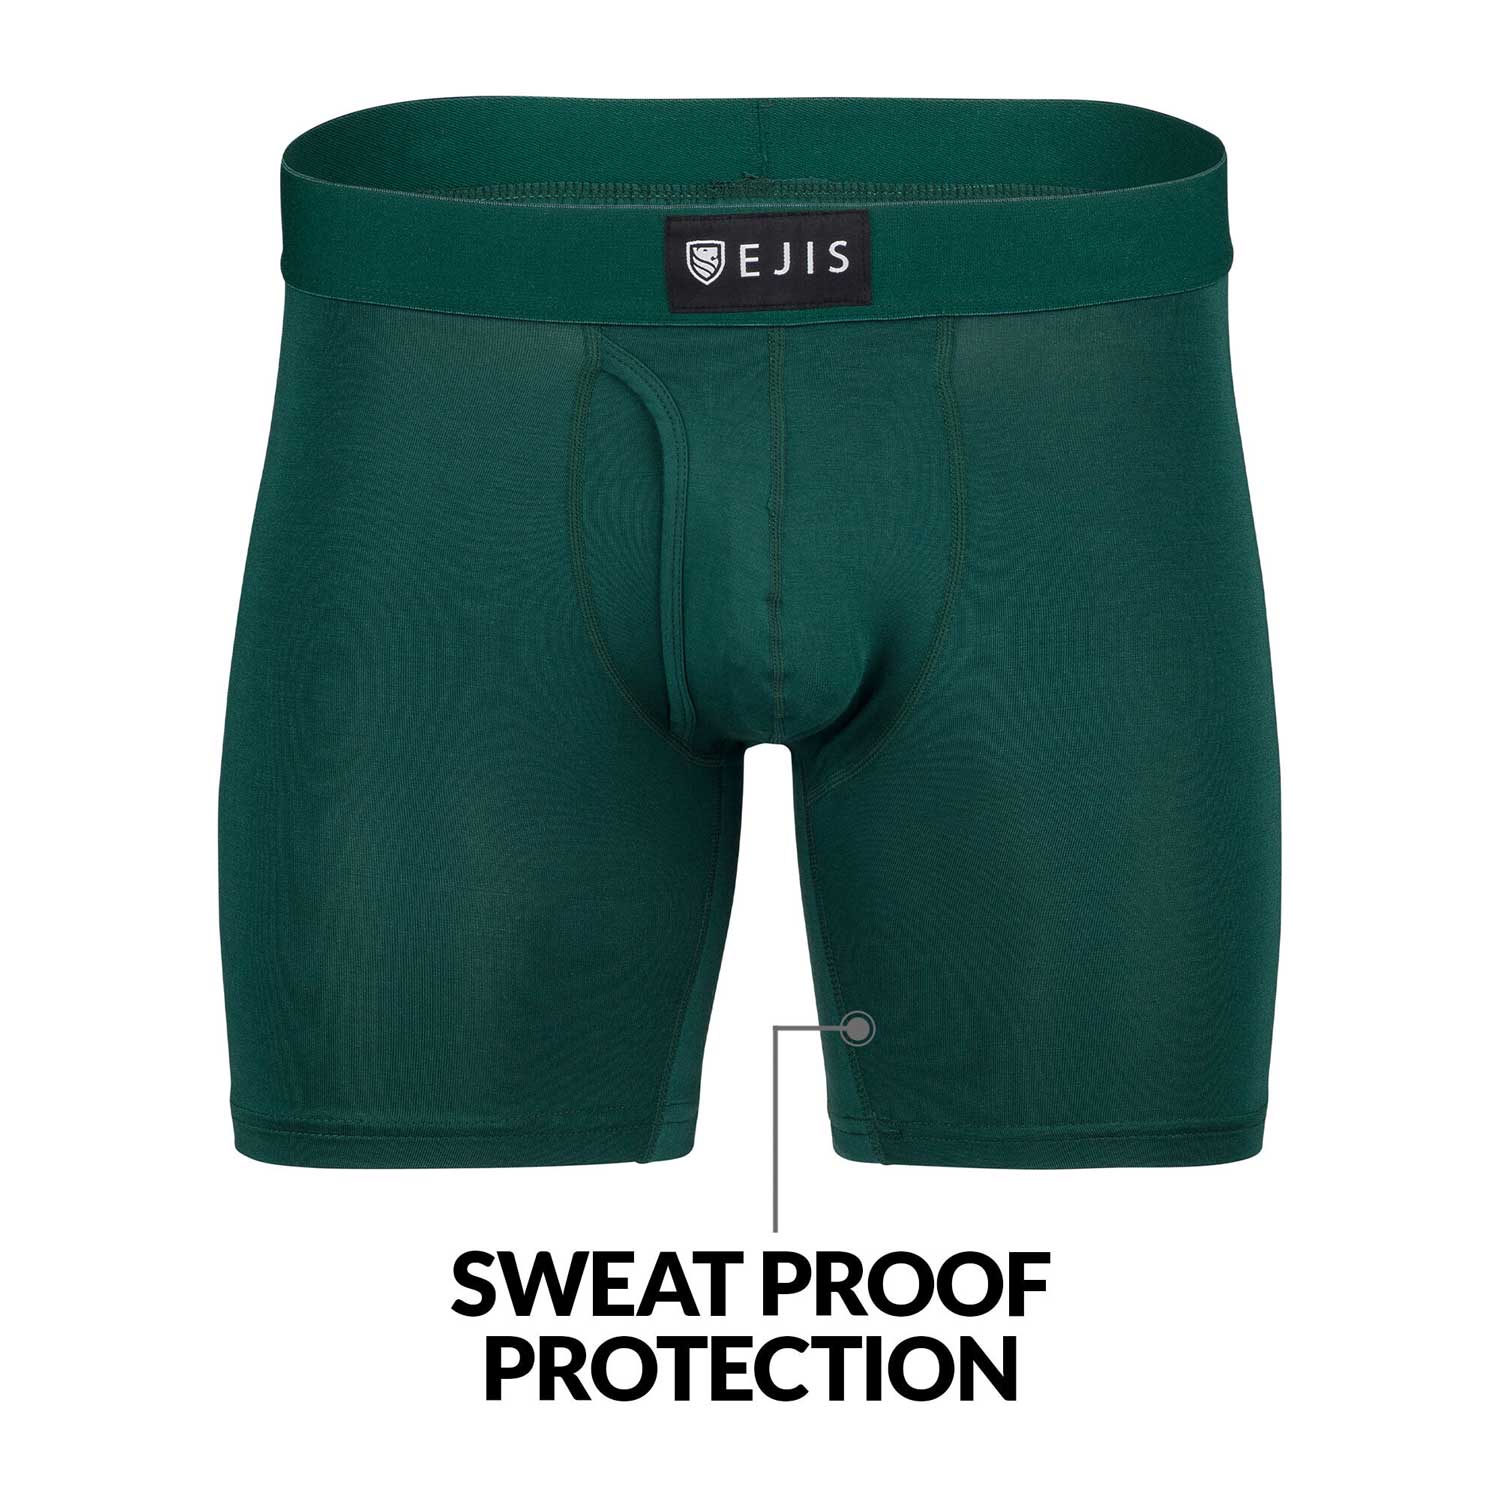 Ejis Sweatproof Mens Boxer Briefs Modal Fly Underwear w Sweat